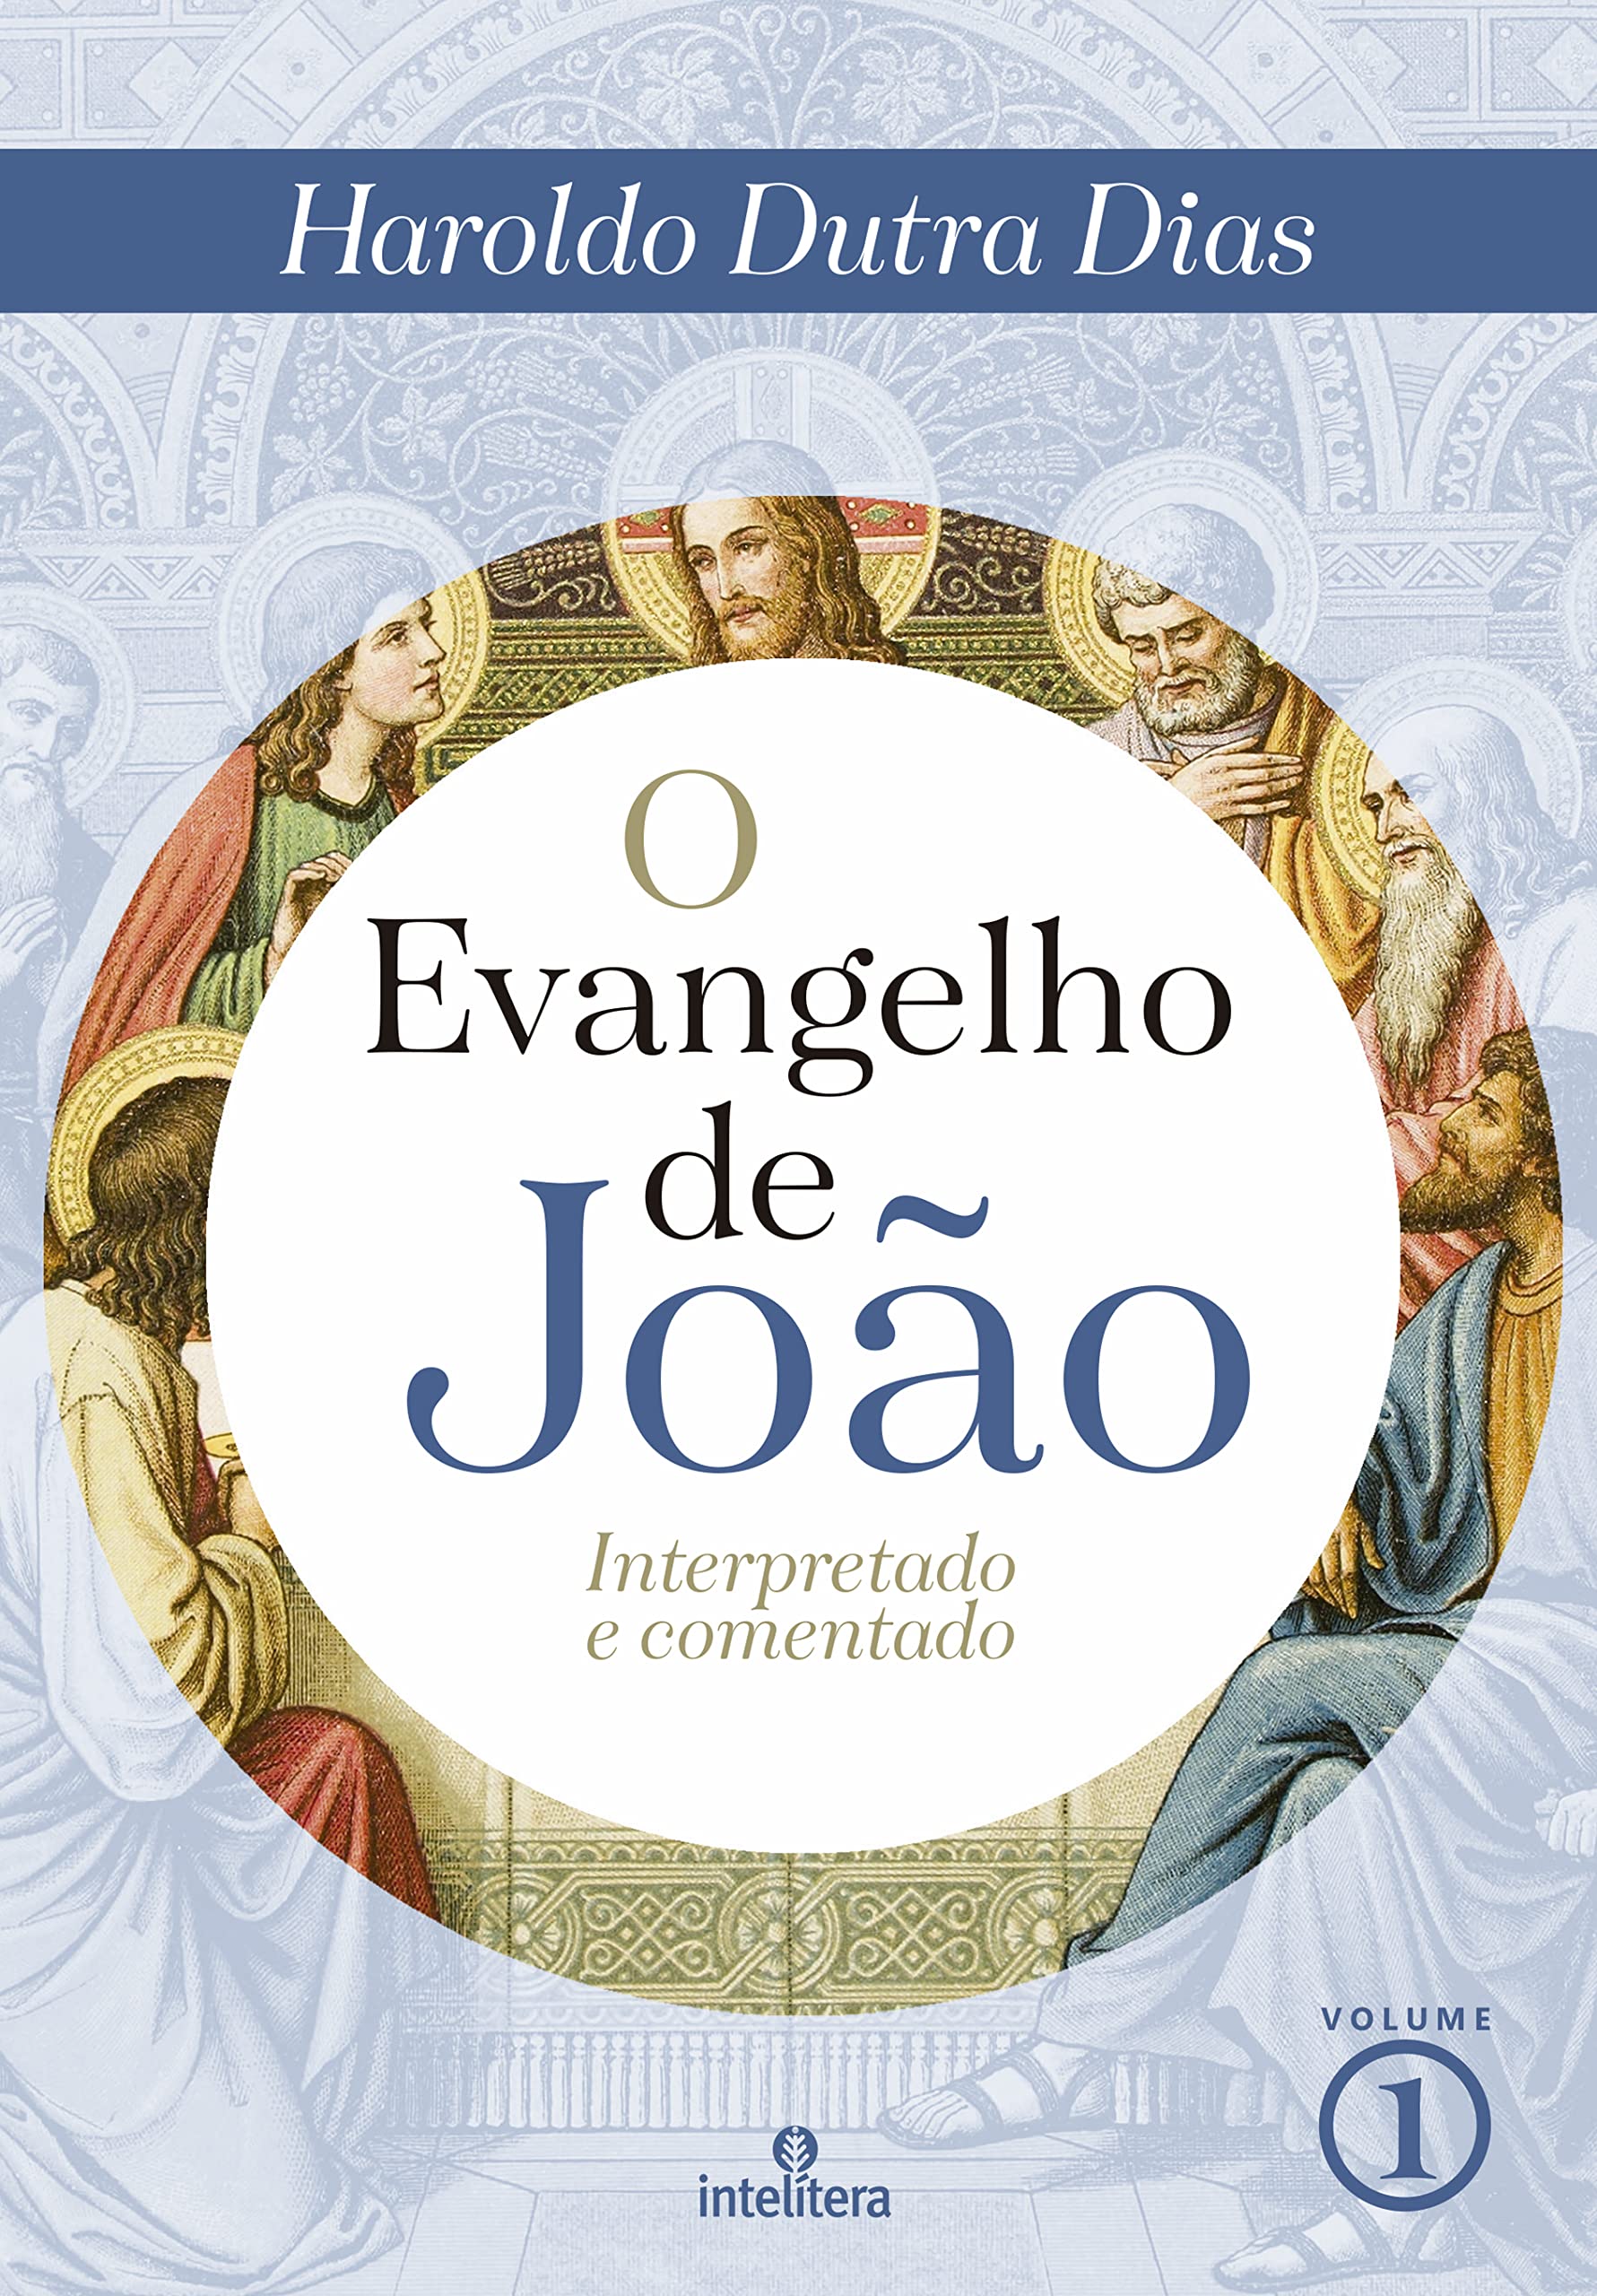 O Evangelho de João: Interpretado e comentado (Portuguese Edition)